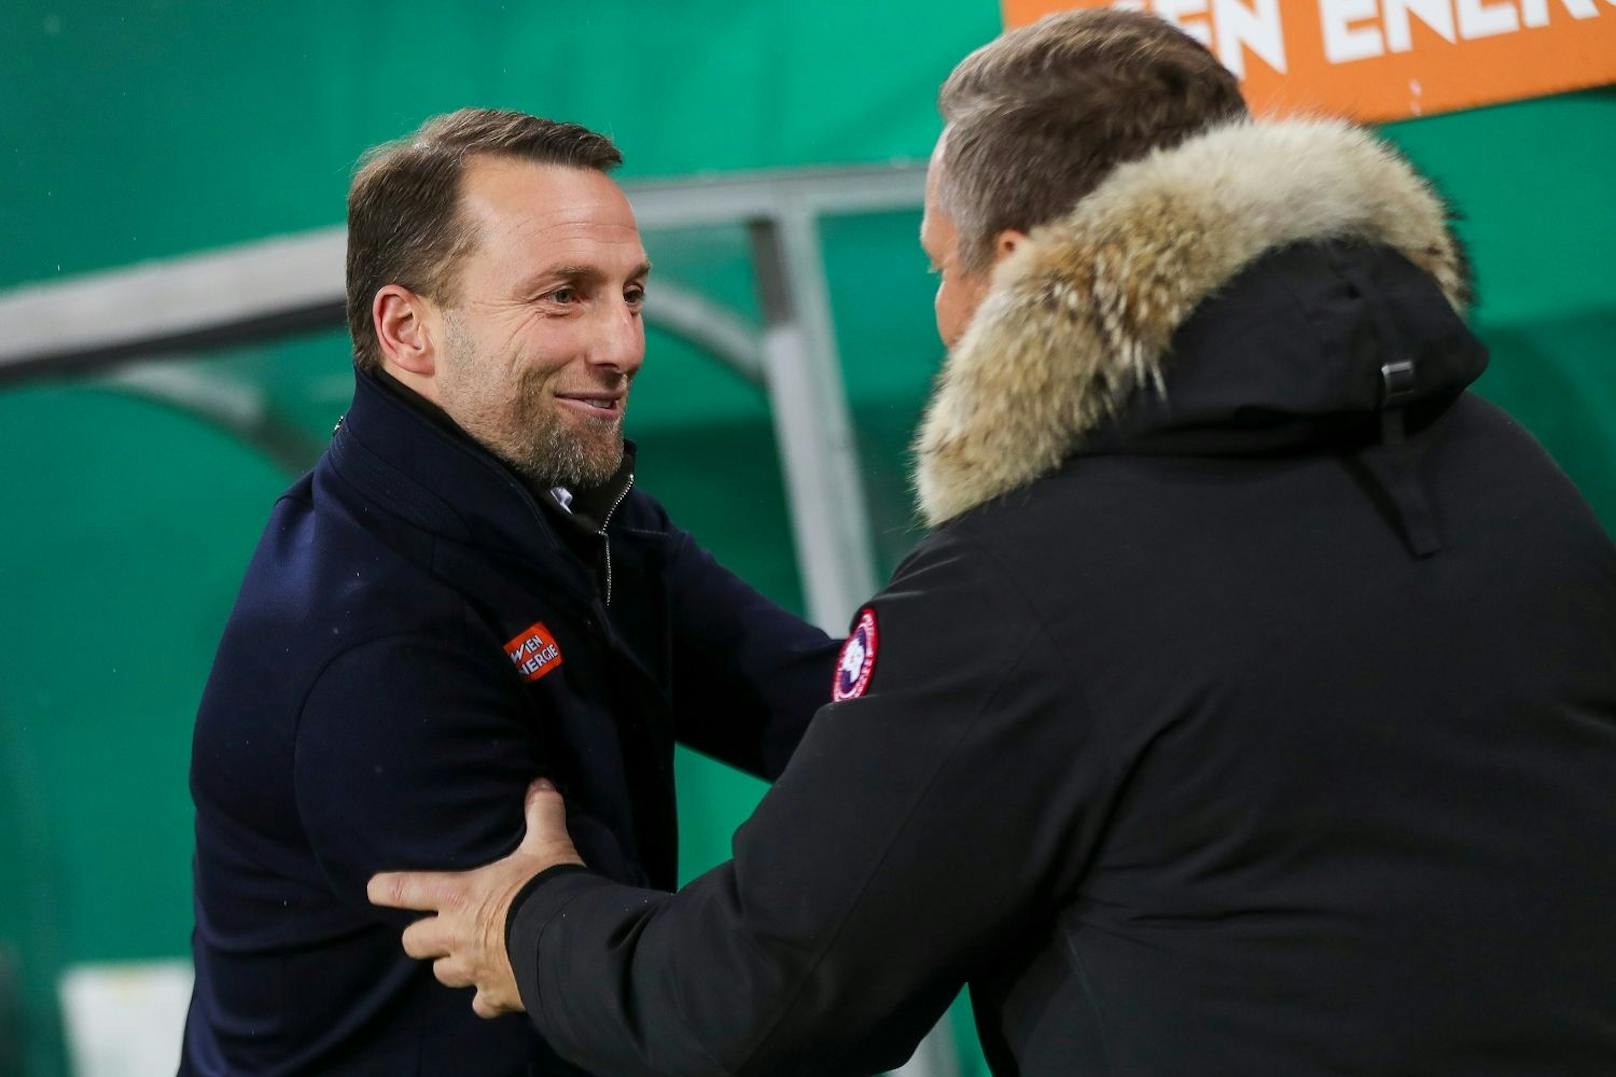 Ferdinand Feldhofer geht in seinem ersten Spiel als Rapid-Trainer sogleich in ein Wiener Derby. Hier begrüßt er sein Gegenüber Manfred Schmid im Allianz Stadion.